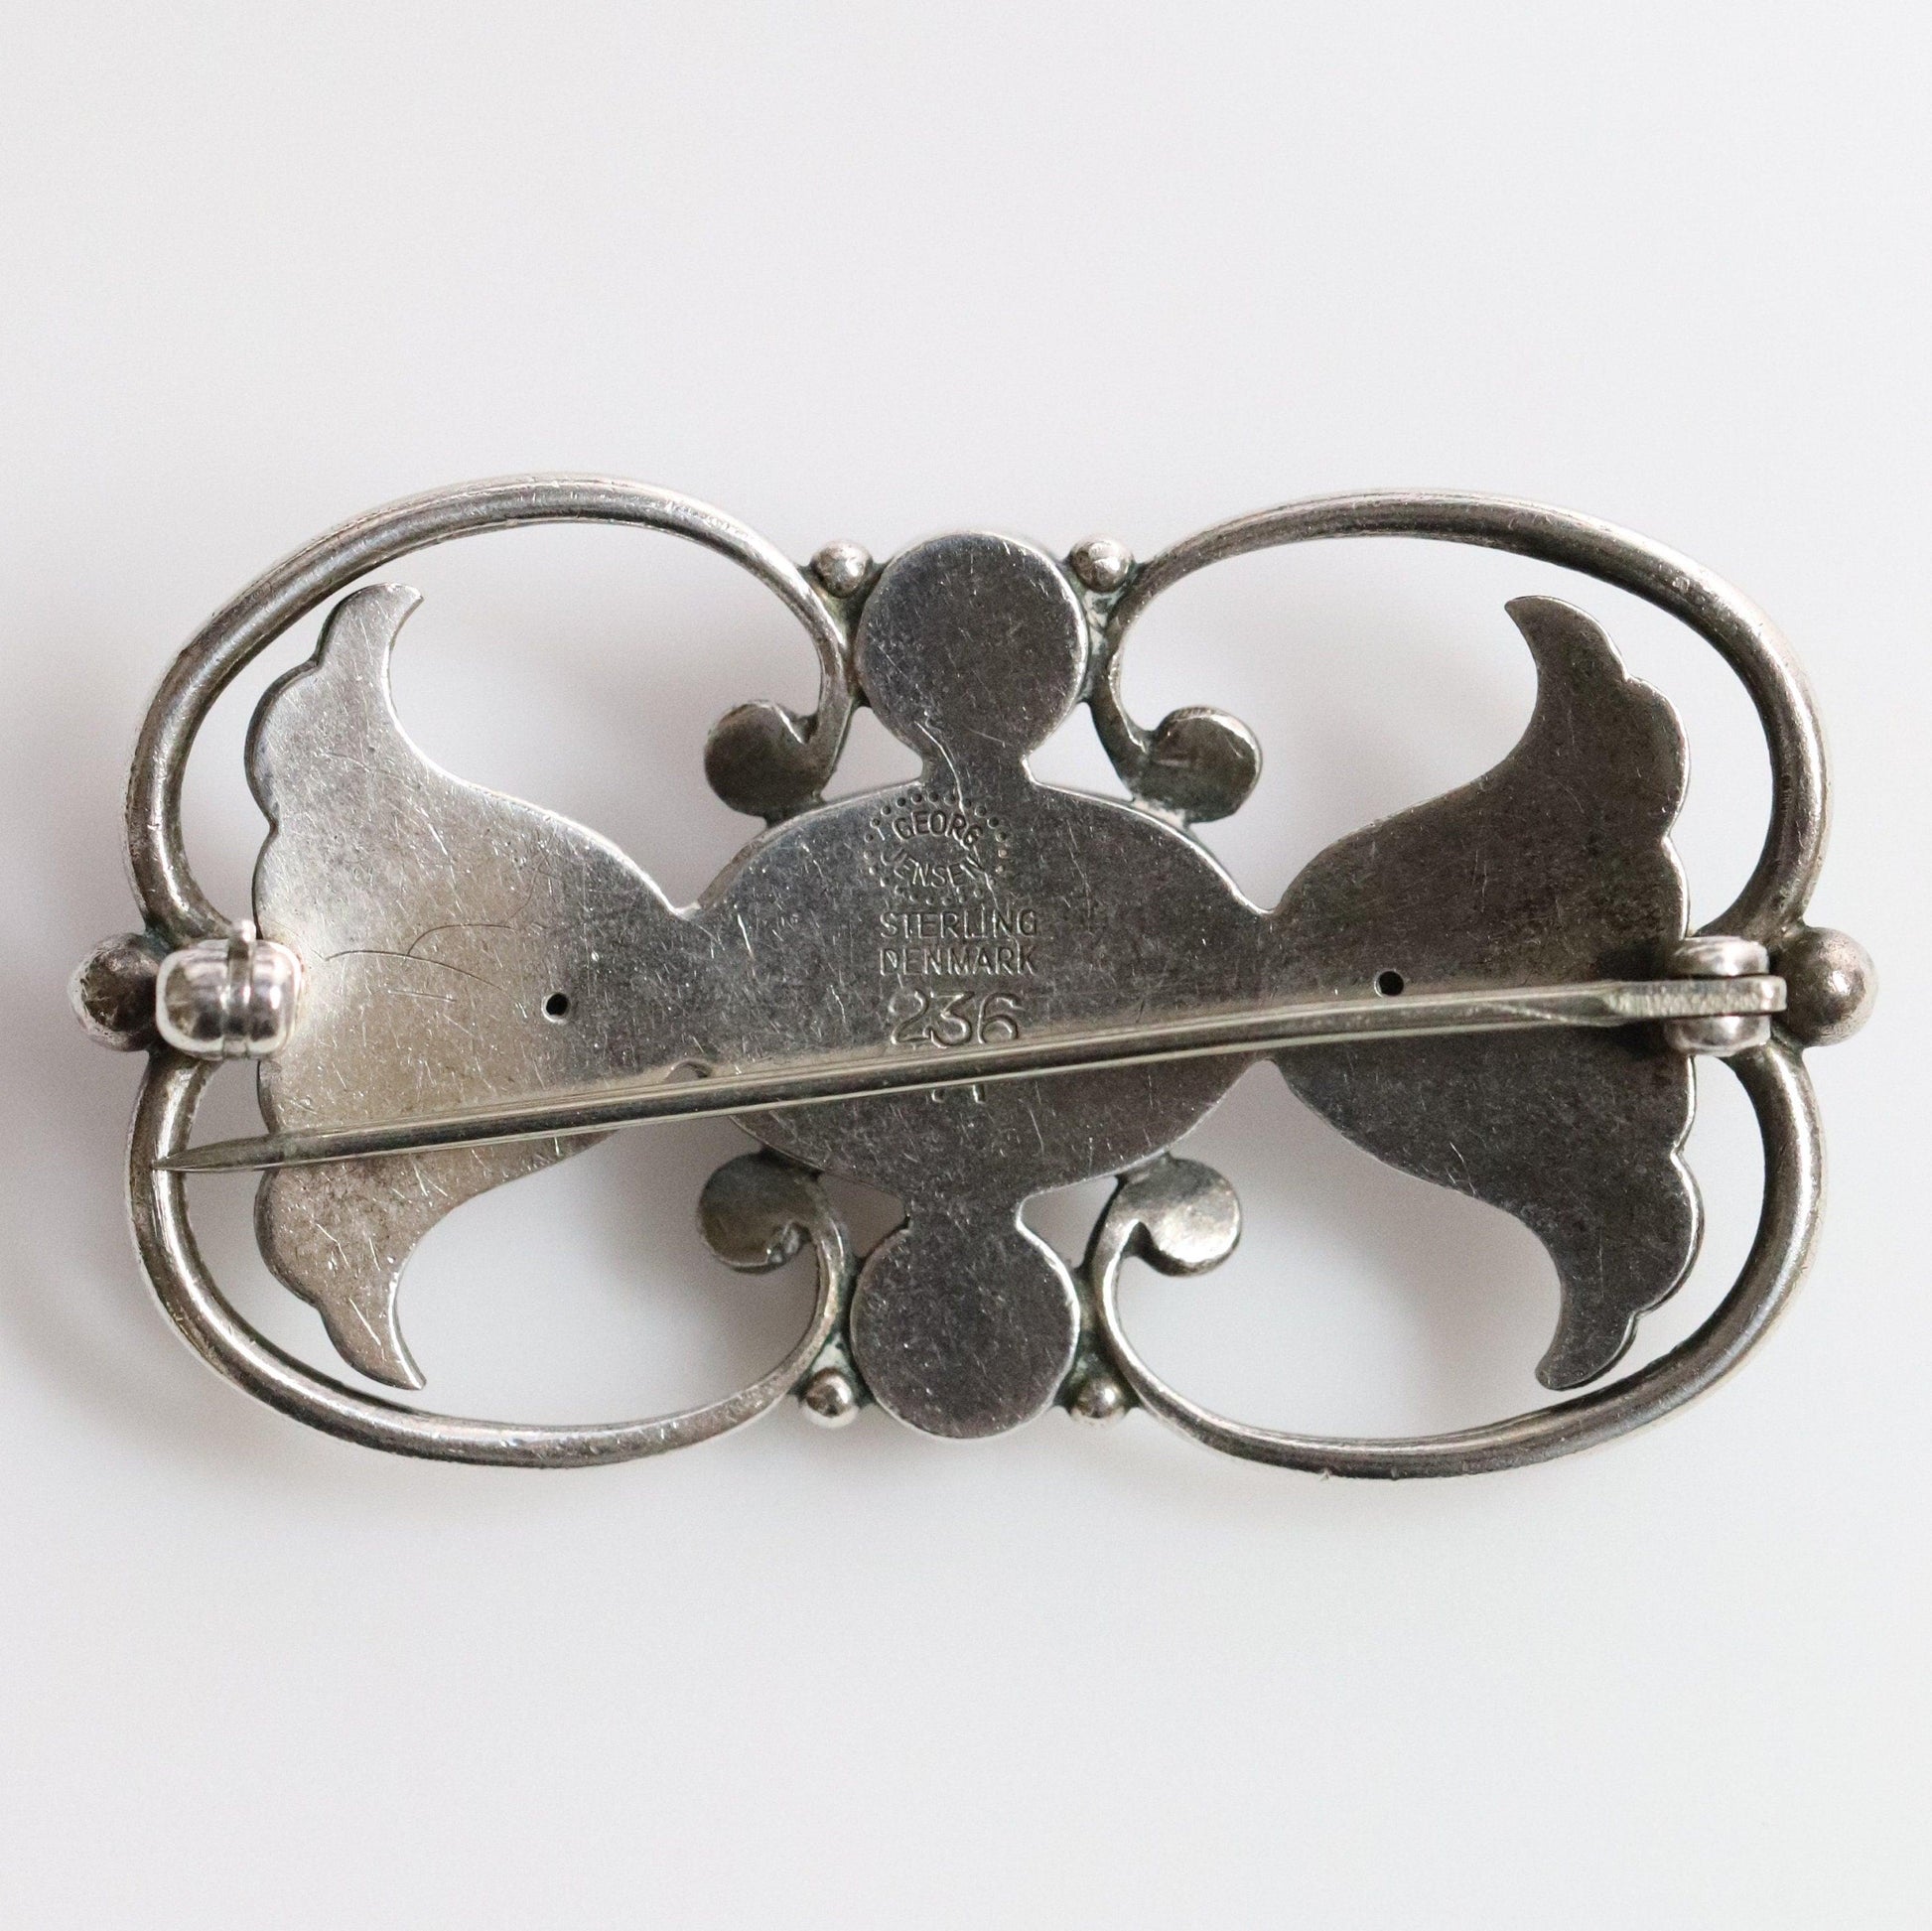 Georg Jensen Jewelry | Ornate Art Nouveau Pin Silver Vintage Brooch 236A - Carmel Fine Silver Jewelry